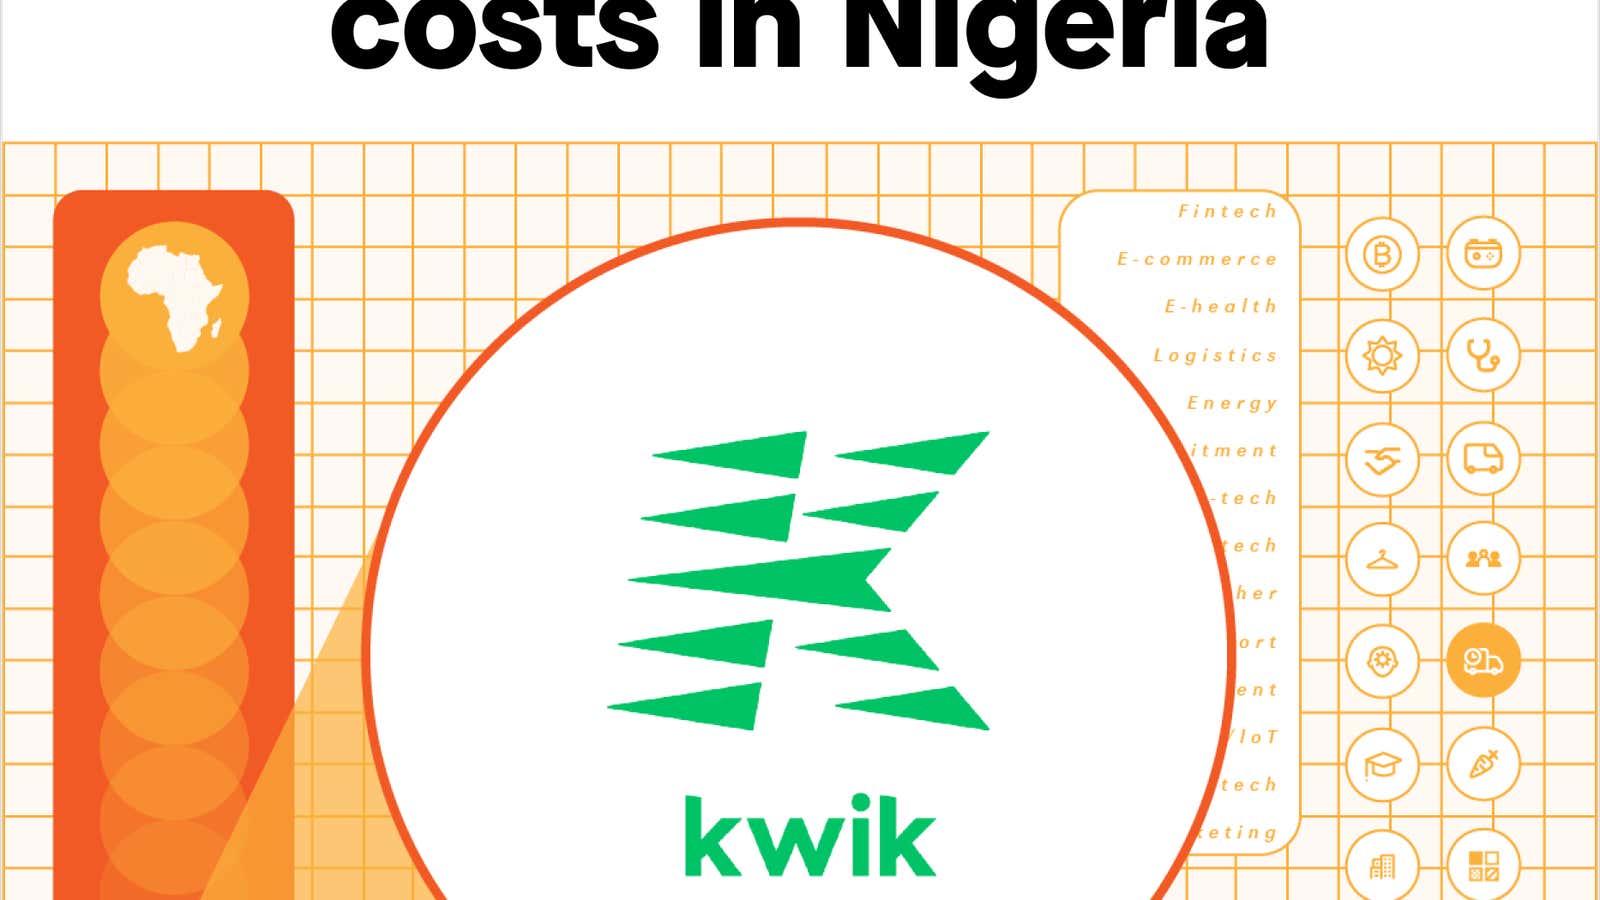 âœ¦ Cutting logistics costs in Nigeria